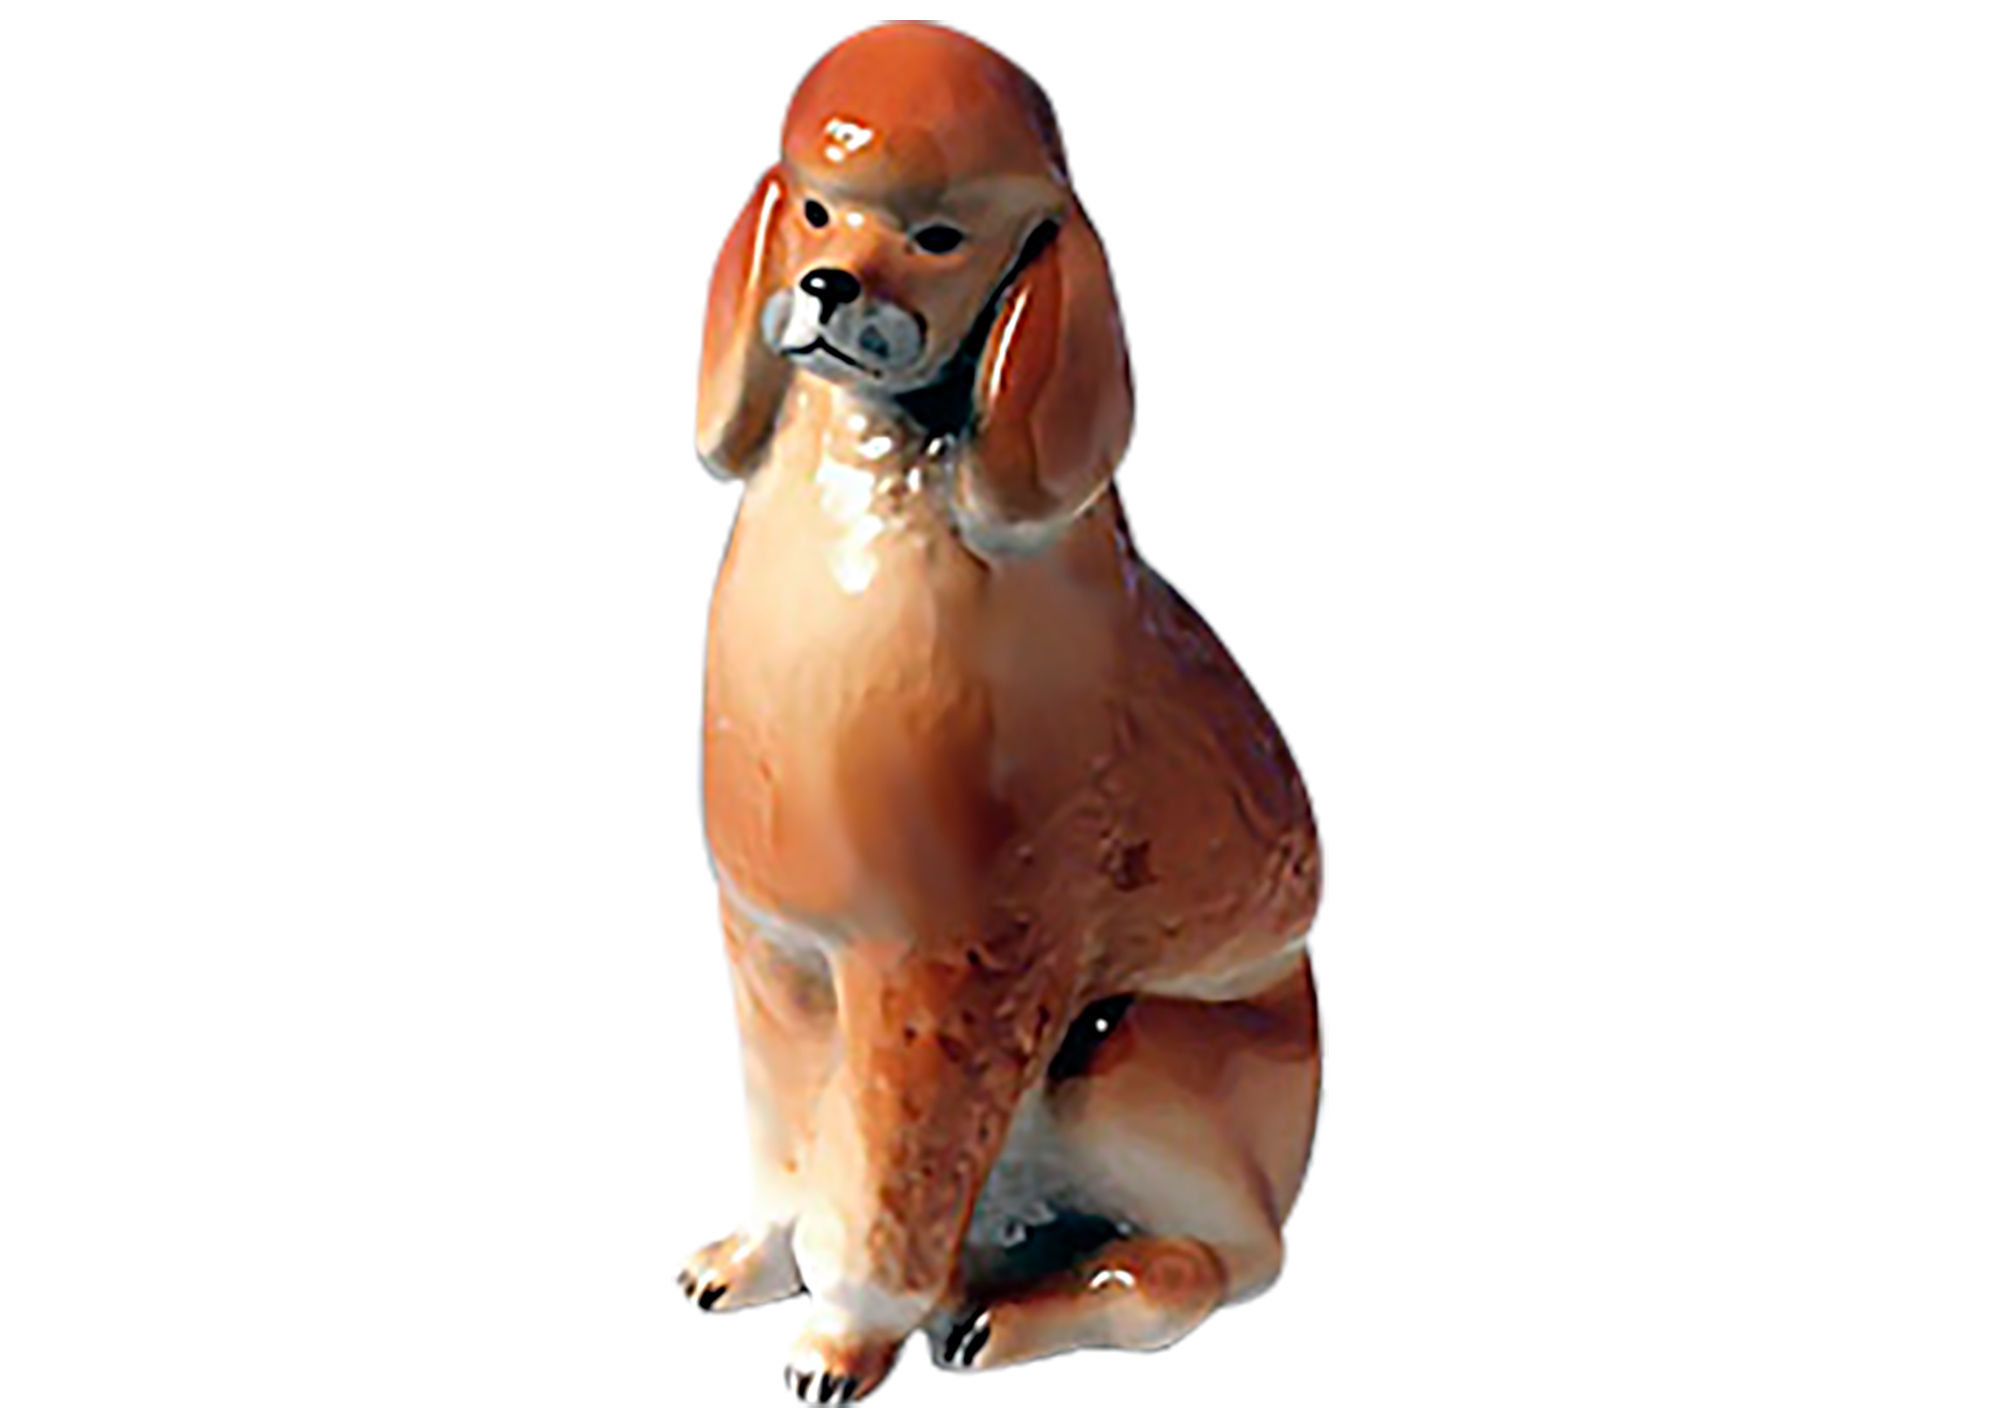 Buy Tan Poodle Dog Figurine at GoldenCockerel.com